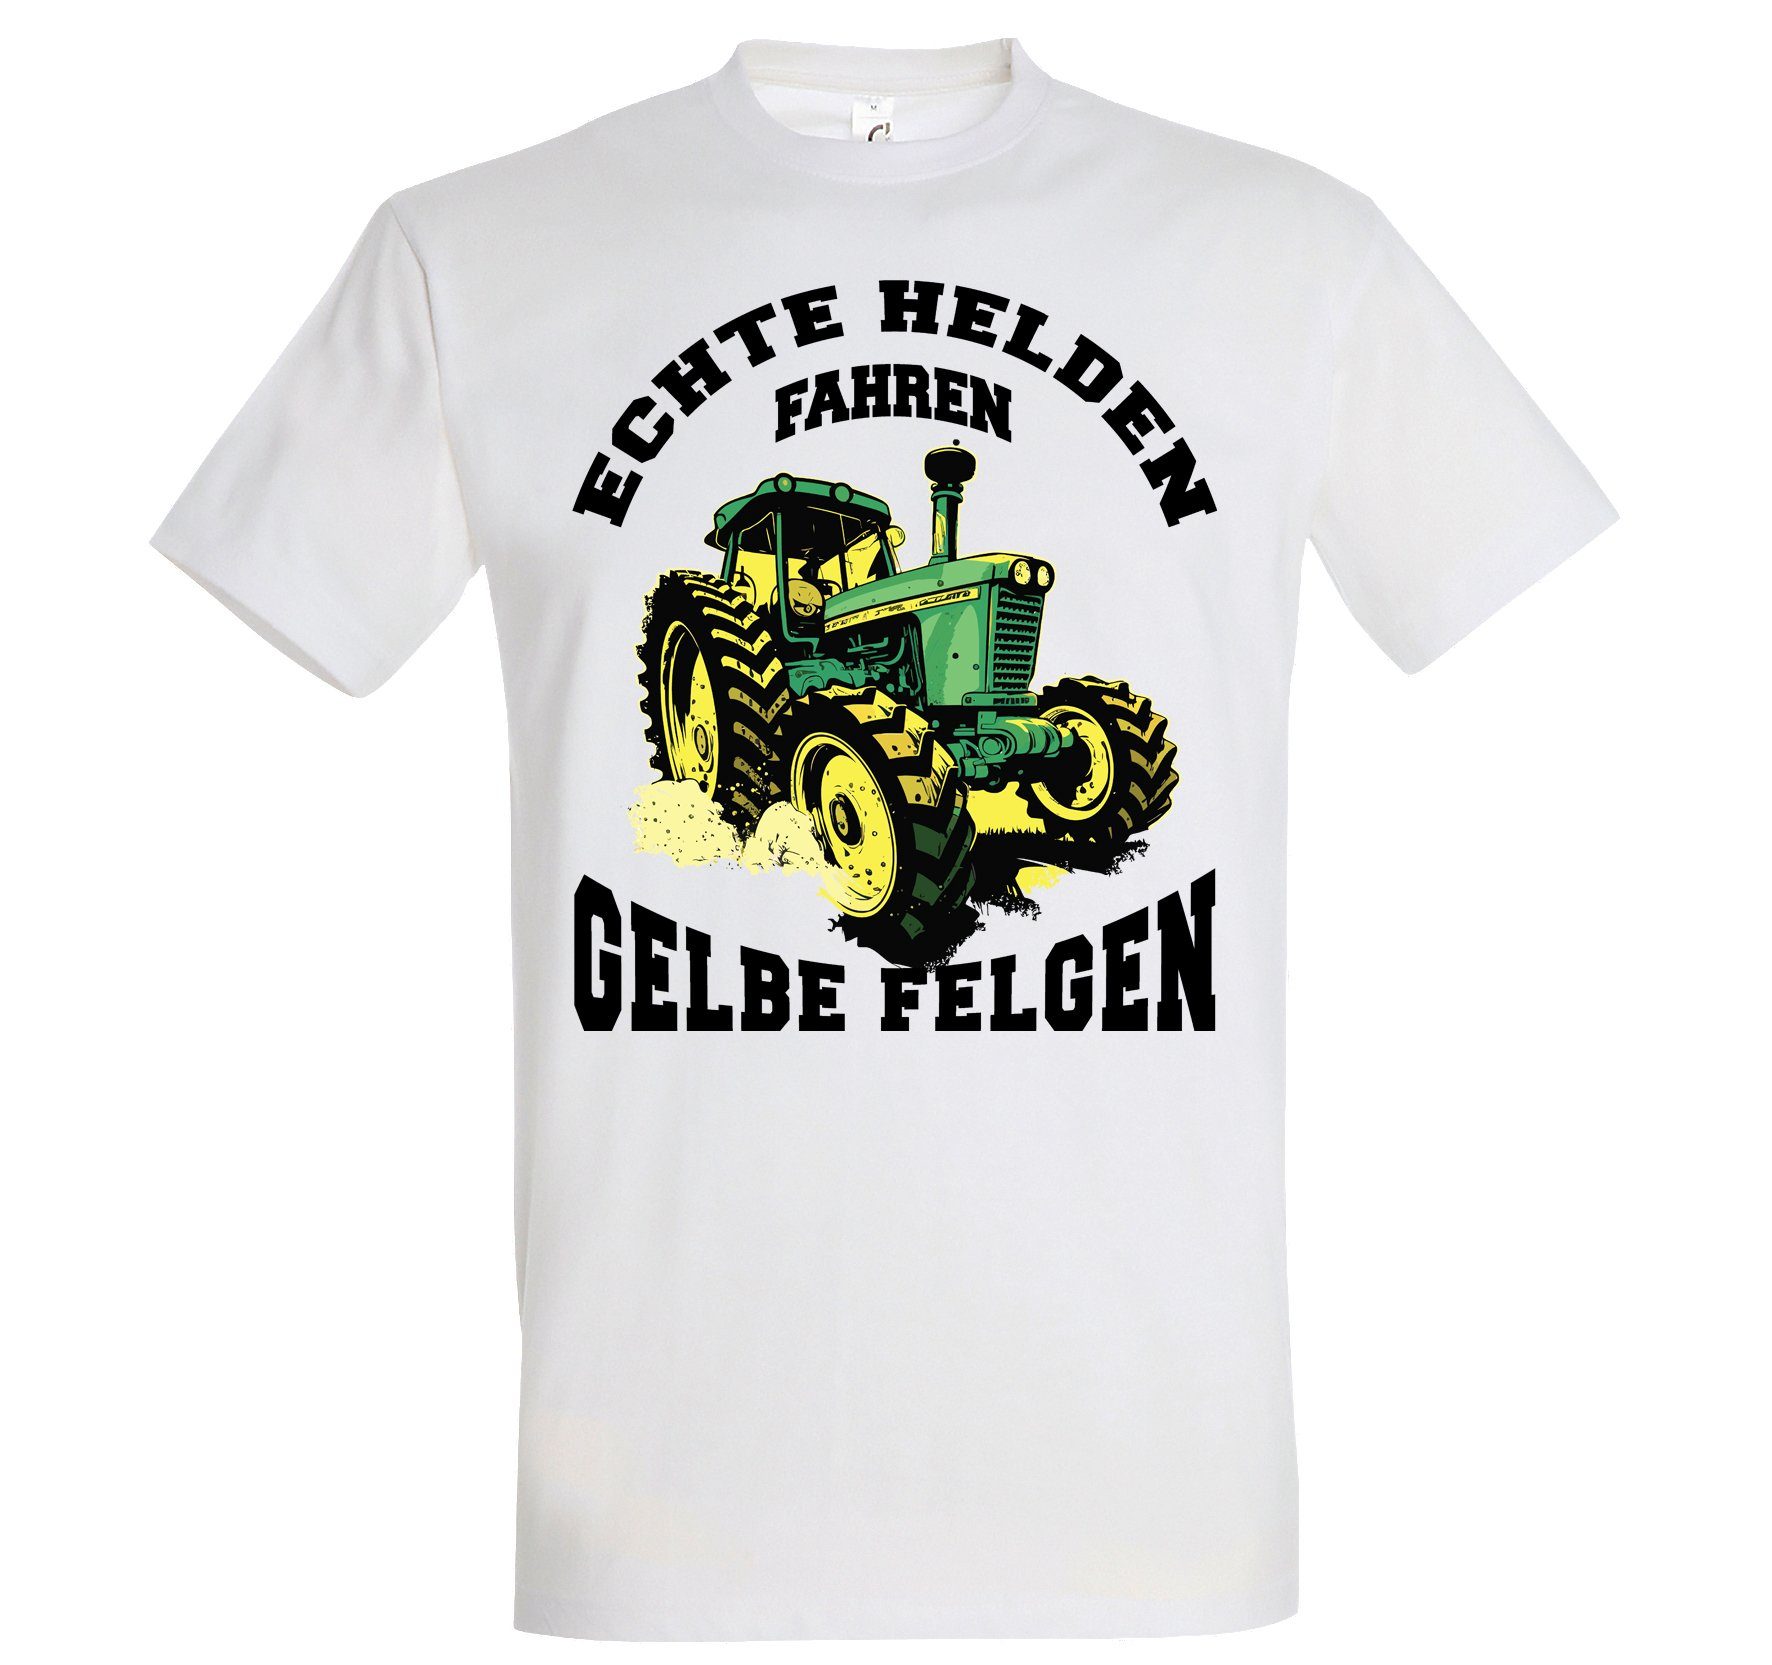 Designz fahren Youth Herren Helden "Echte Spruch Felgen" lustigem Print-Shirt gelbe Weiss mit T-Shirt